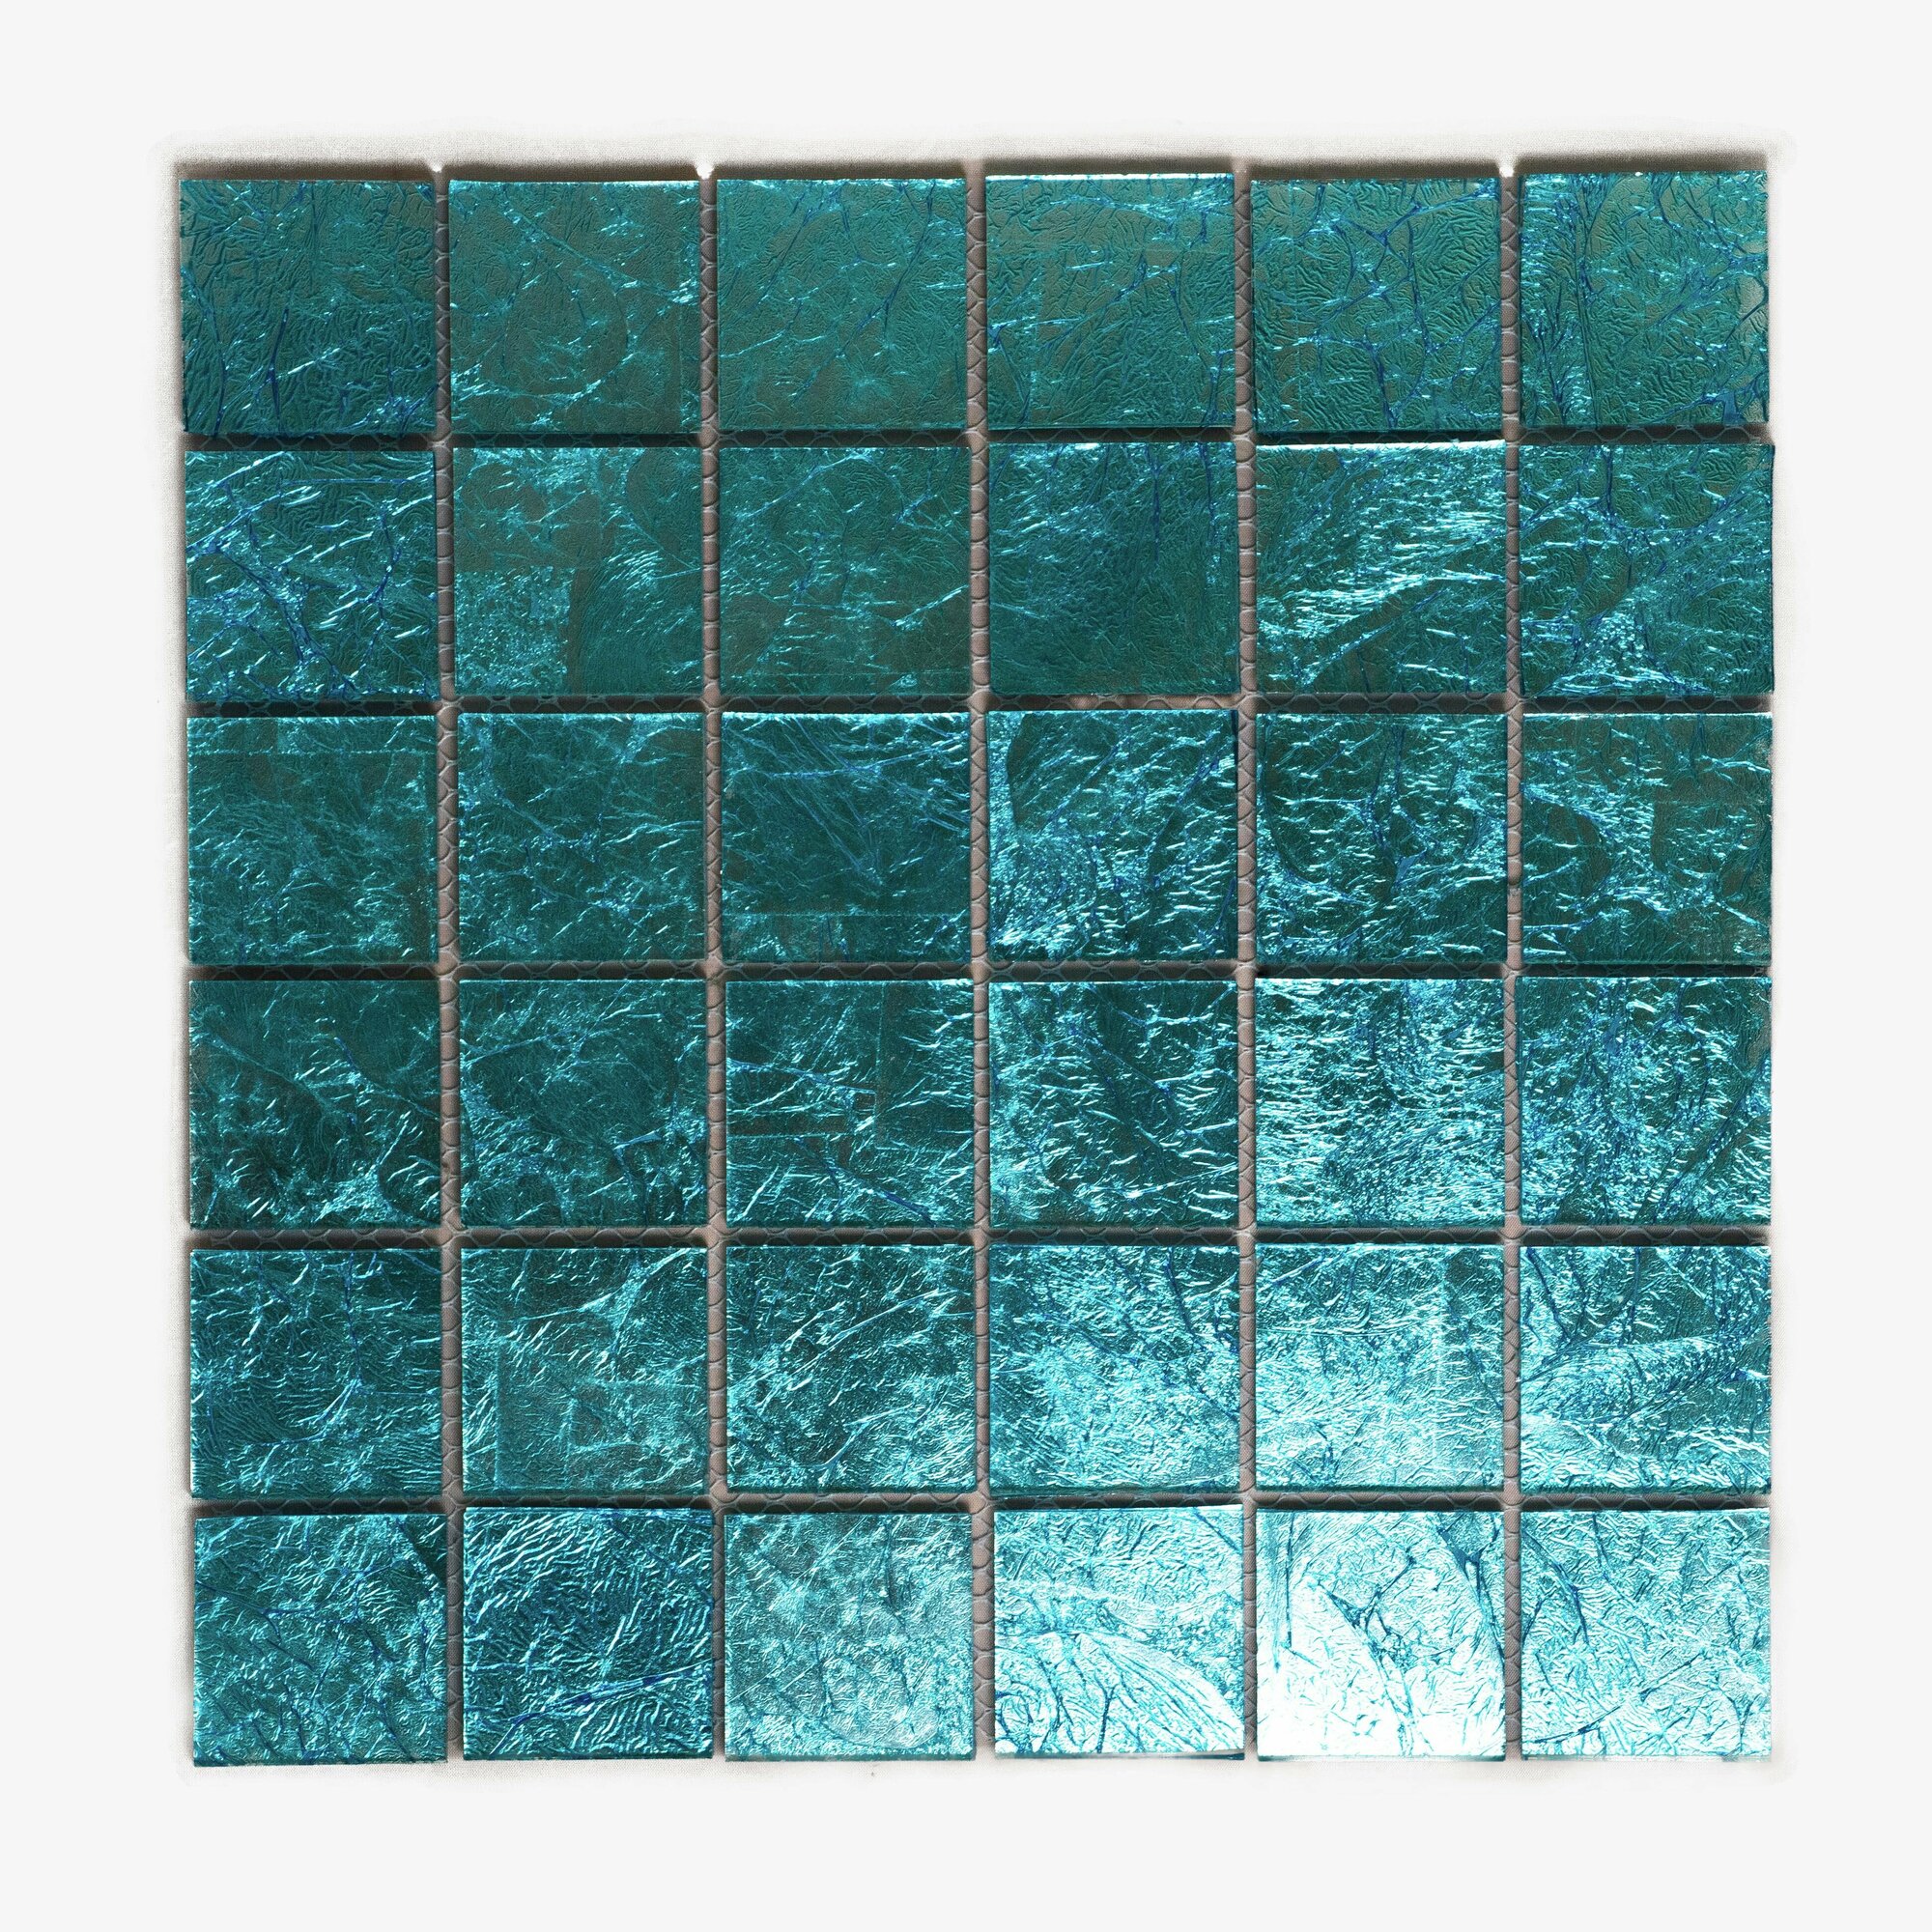 Плитка мозаика MIRO (серия Aluminium №46), стеклянная плитка мозаика для ванной комнаты, для душевой, для фартука на кухне, 1 шт.